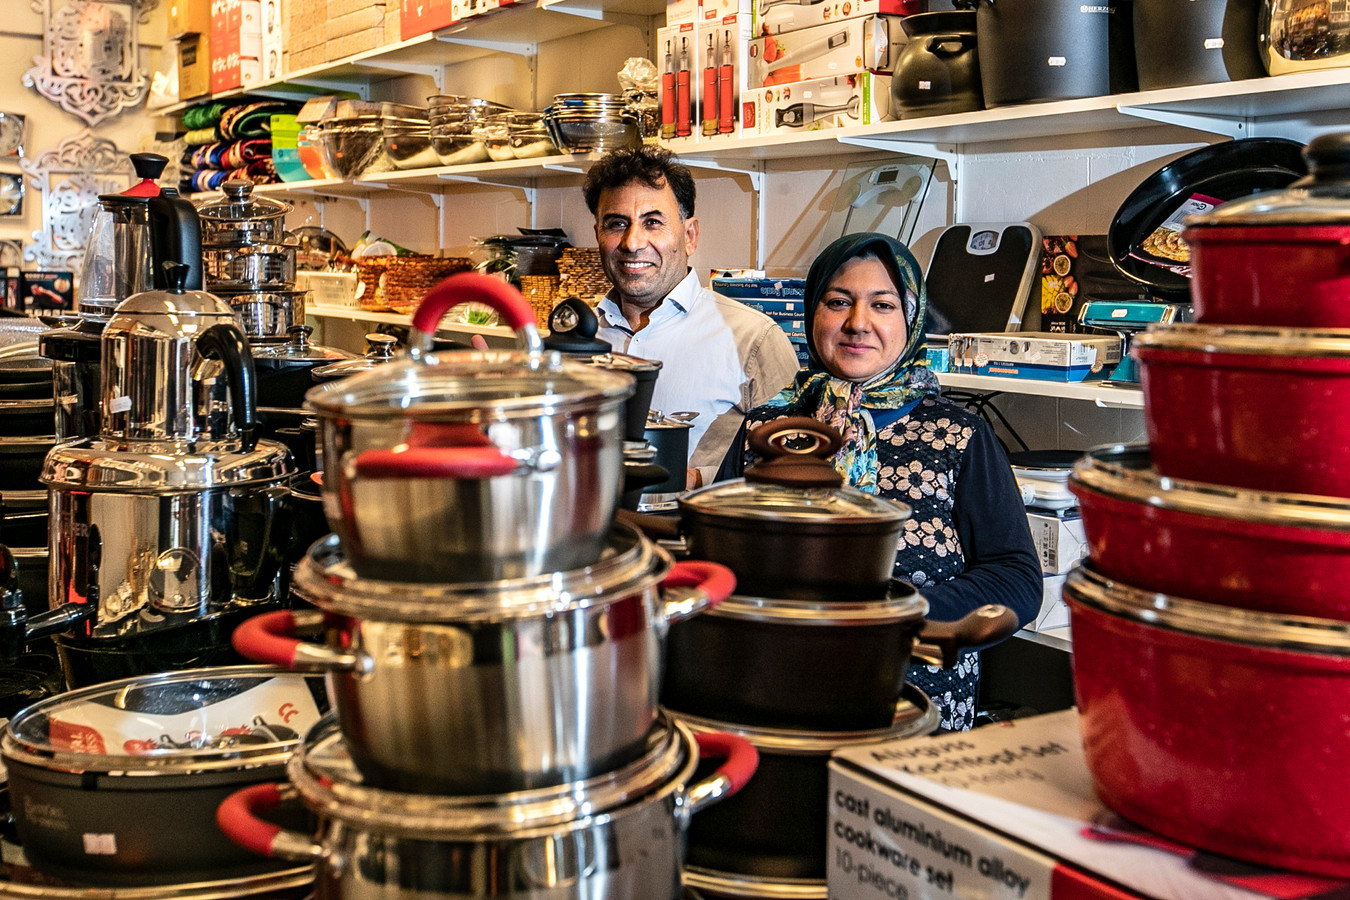 Ondanks nieuwe winkels in Deventer: 'Ons sterke punt dat Deventer geen doorsnee binnenstad is' | Foto | destentor.nl